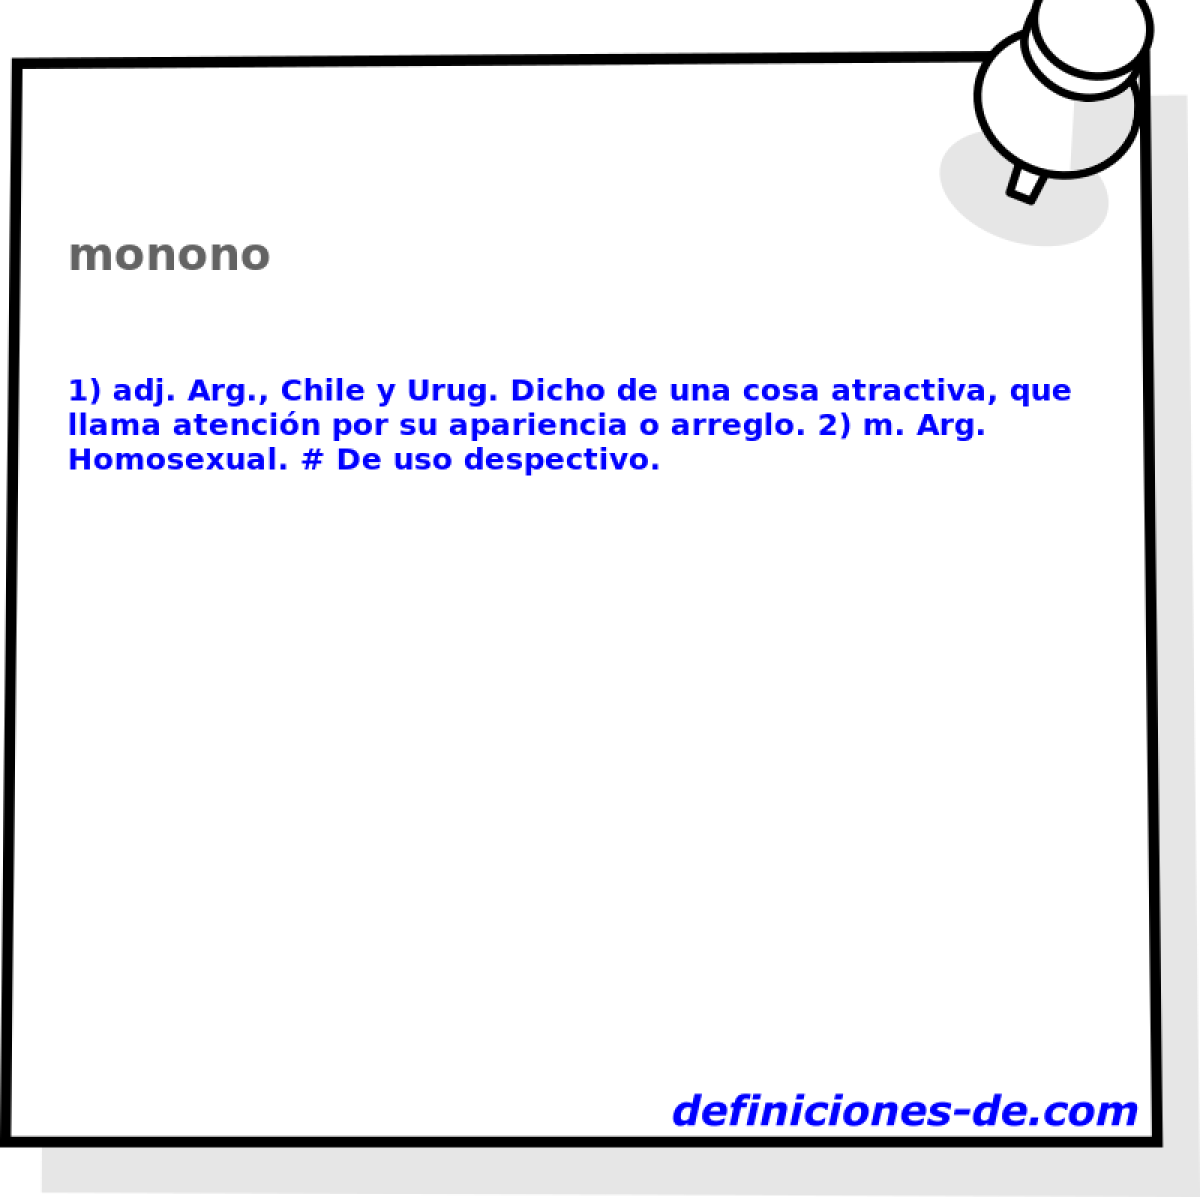 monono 